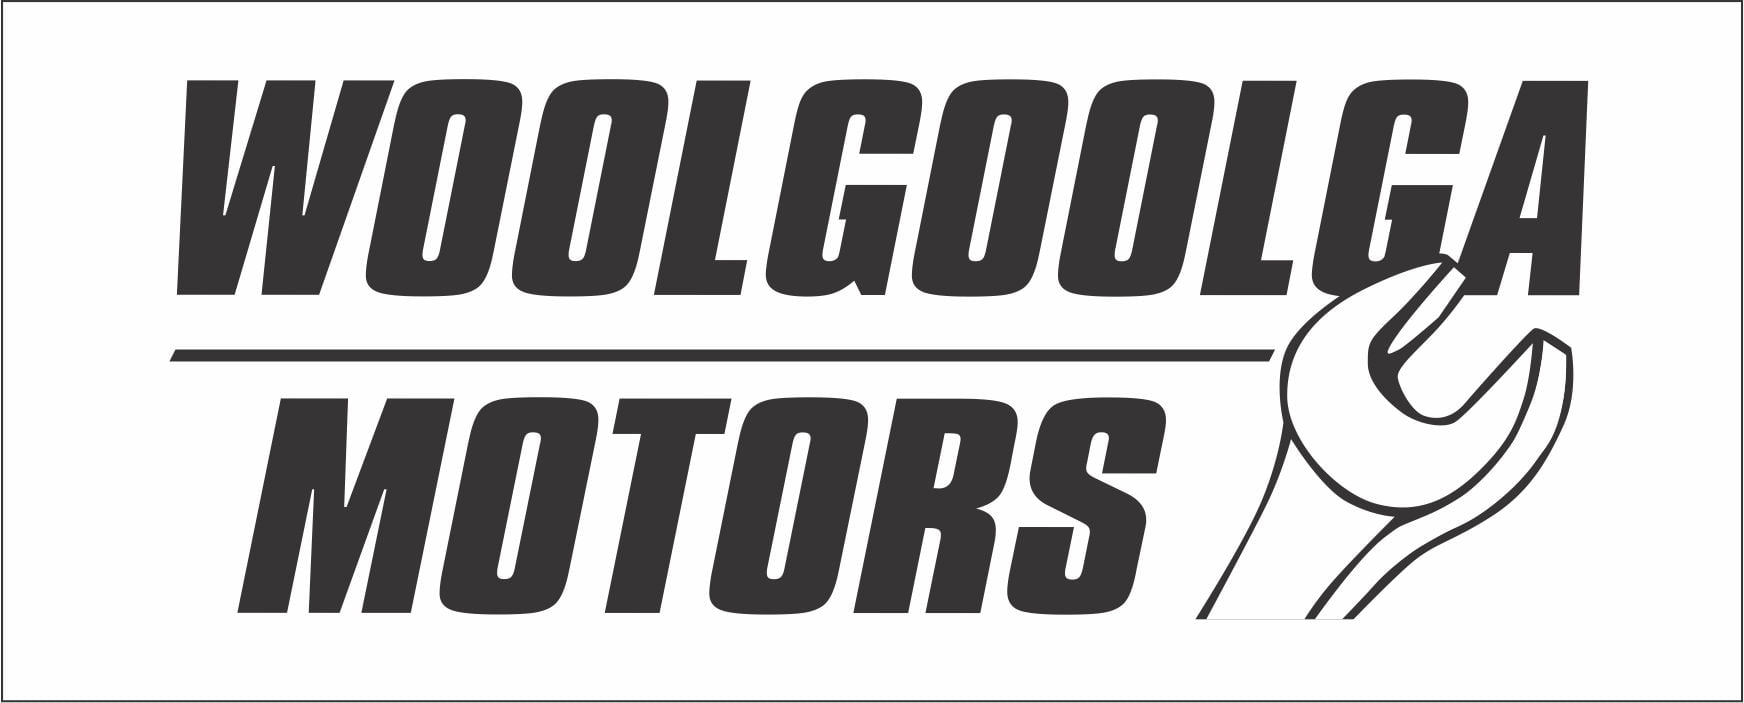 Woolgoolga Motors